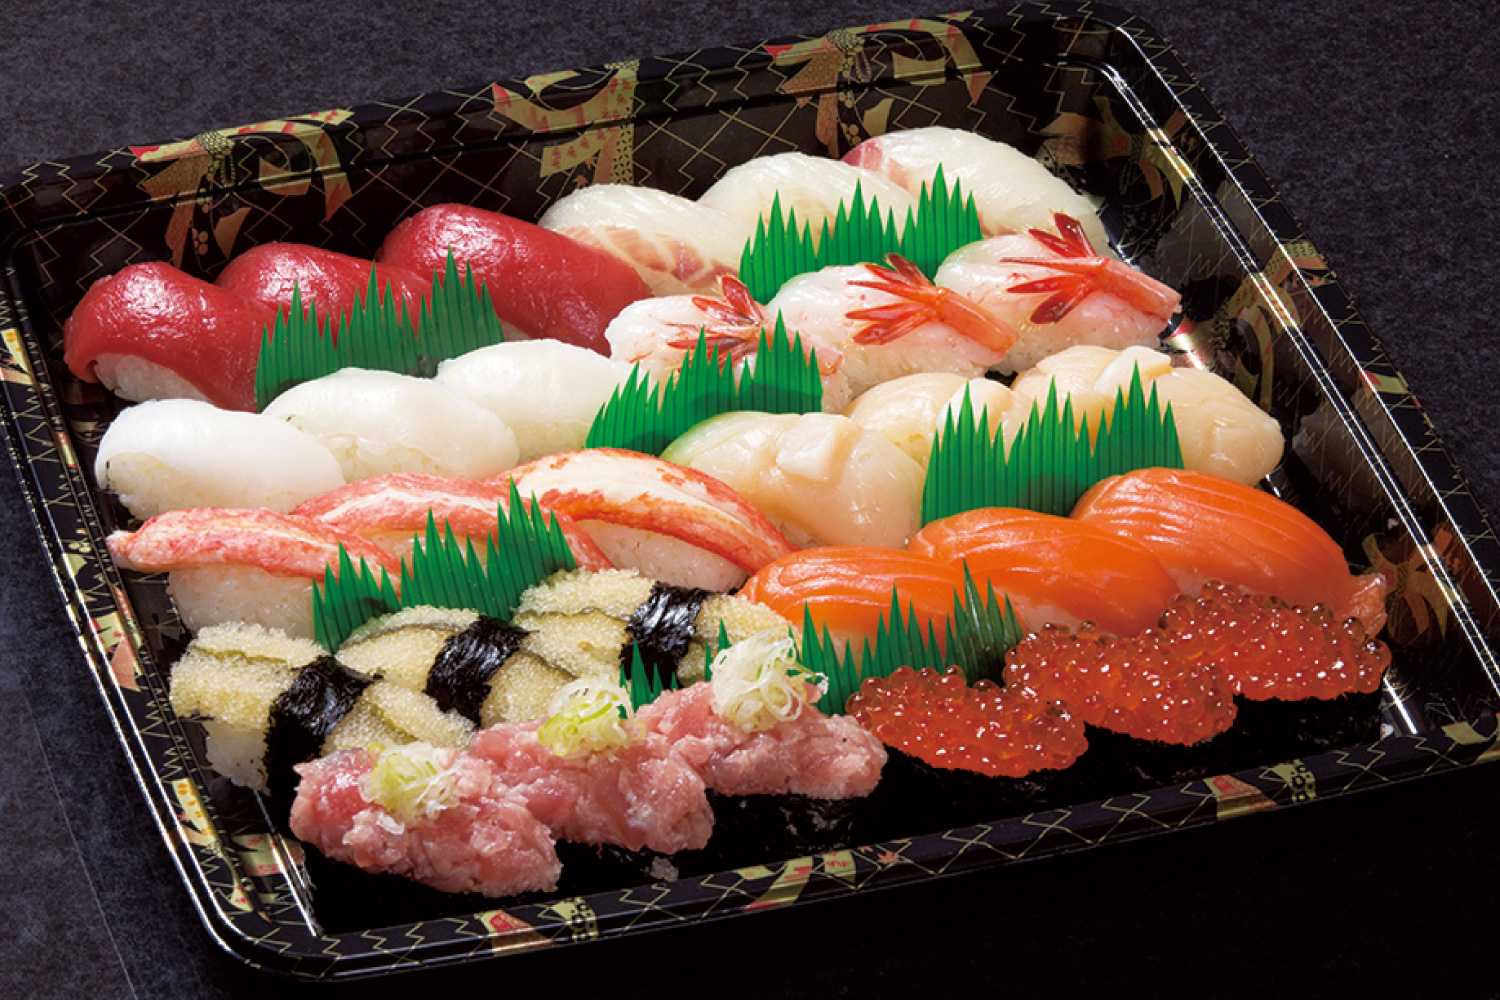 八食市場寿司 お持帰り寿司「宴」 